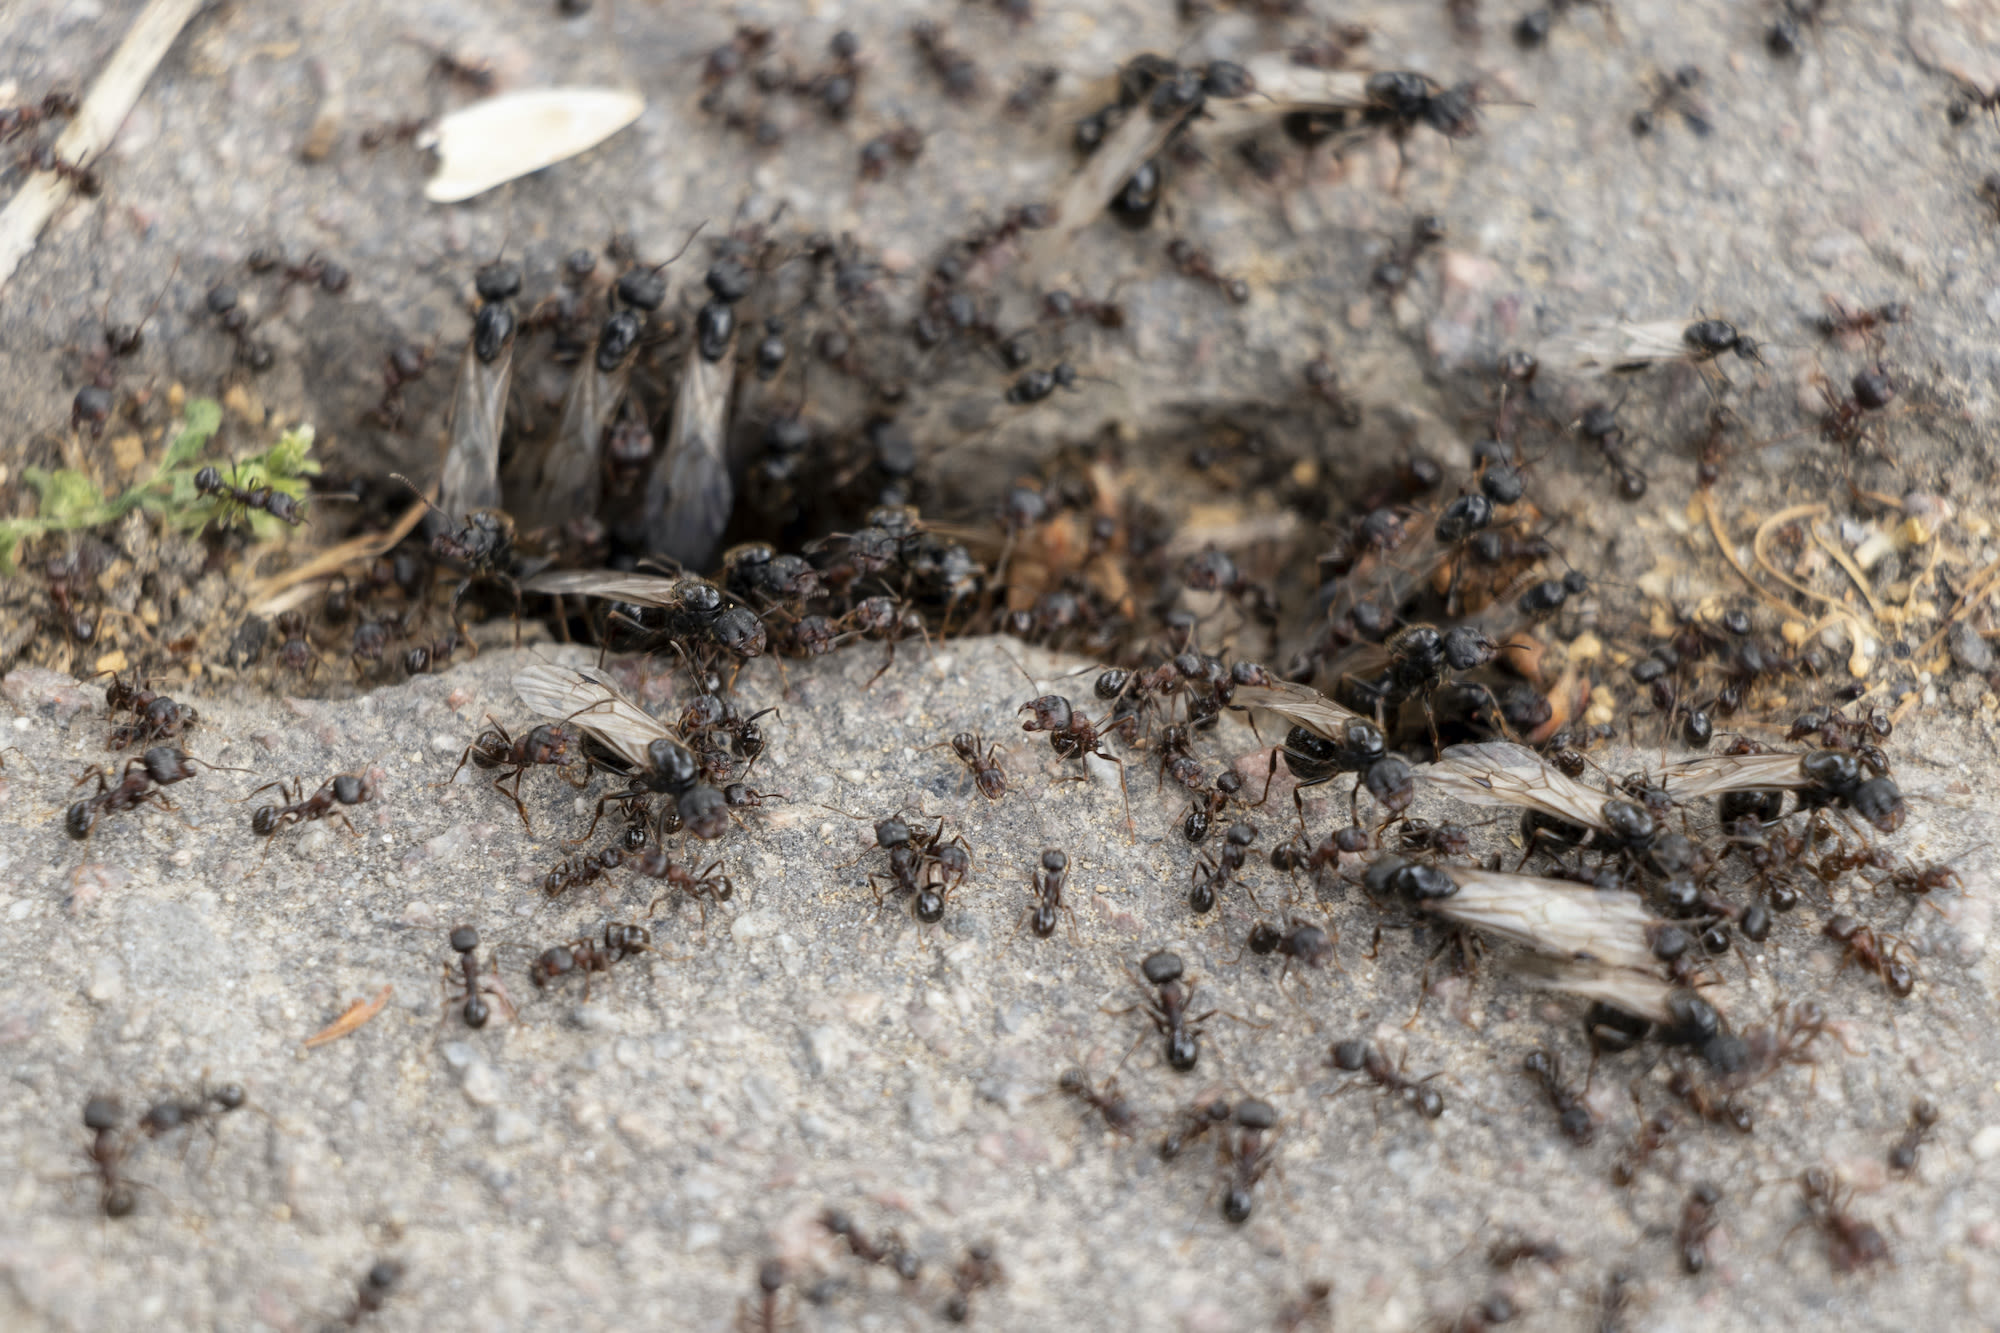 vliegende en gewone mieren op en tussen tegels terras Beeld: AdobeStock Yuliia